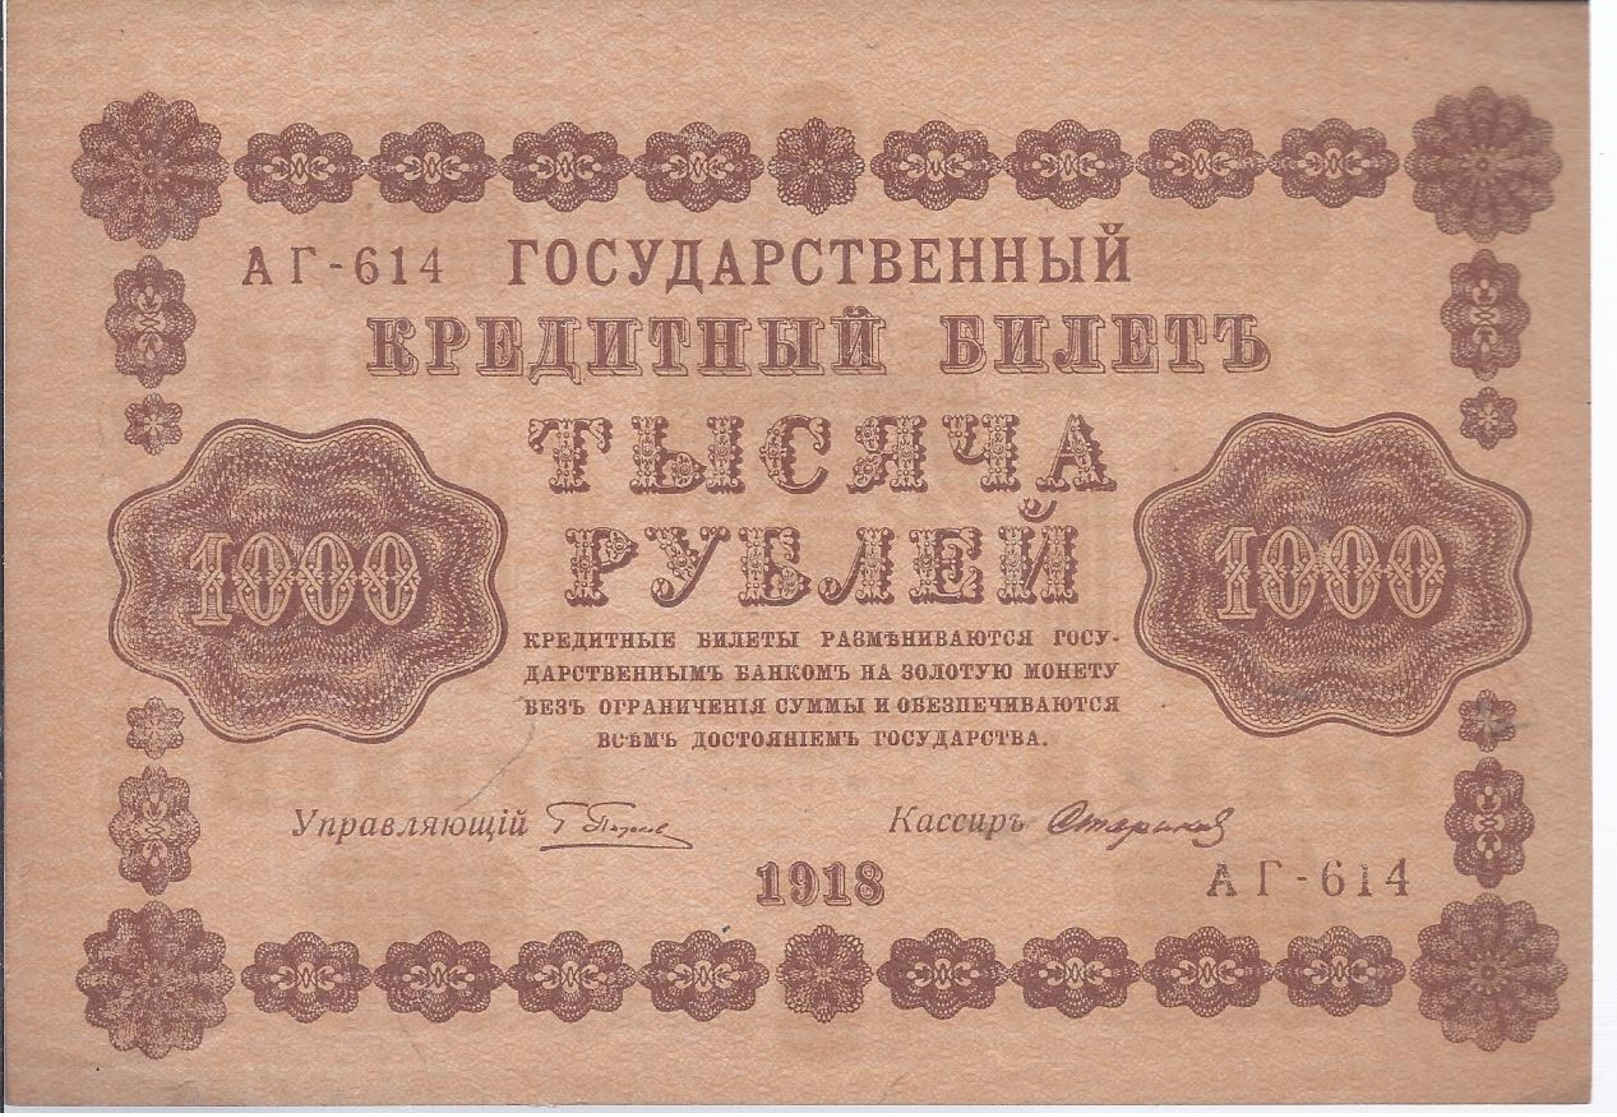 AK-div.29- 158  -  1000   Rubel  1918    AI - 614 - Rusia